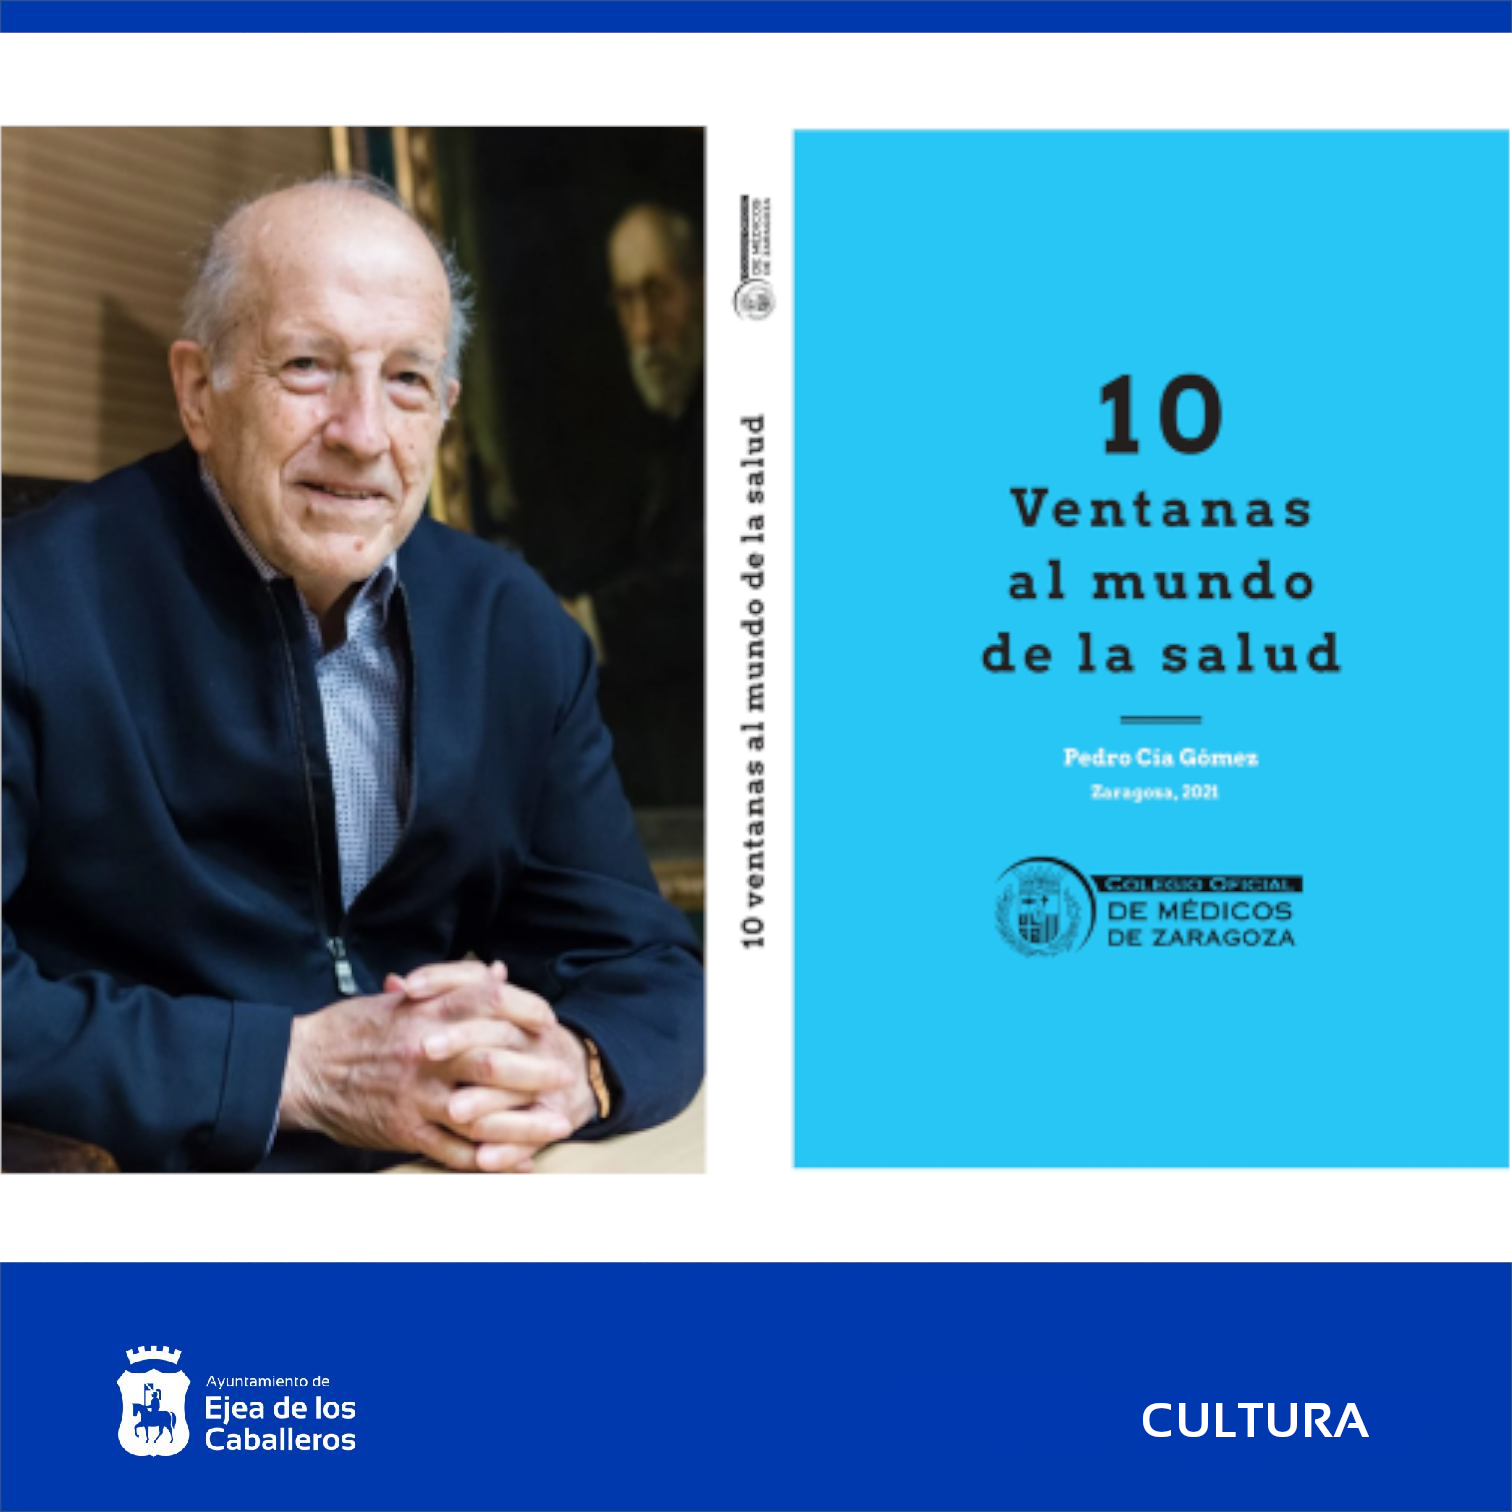 En este momento estás viendo Presentación del libro “10 ventanas al mundo de la salud” del Doctor Pedro Cía Gómez